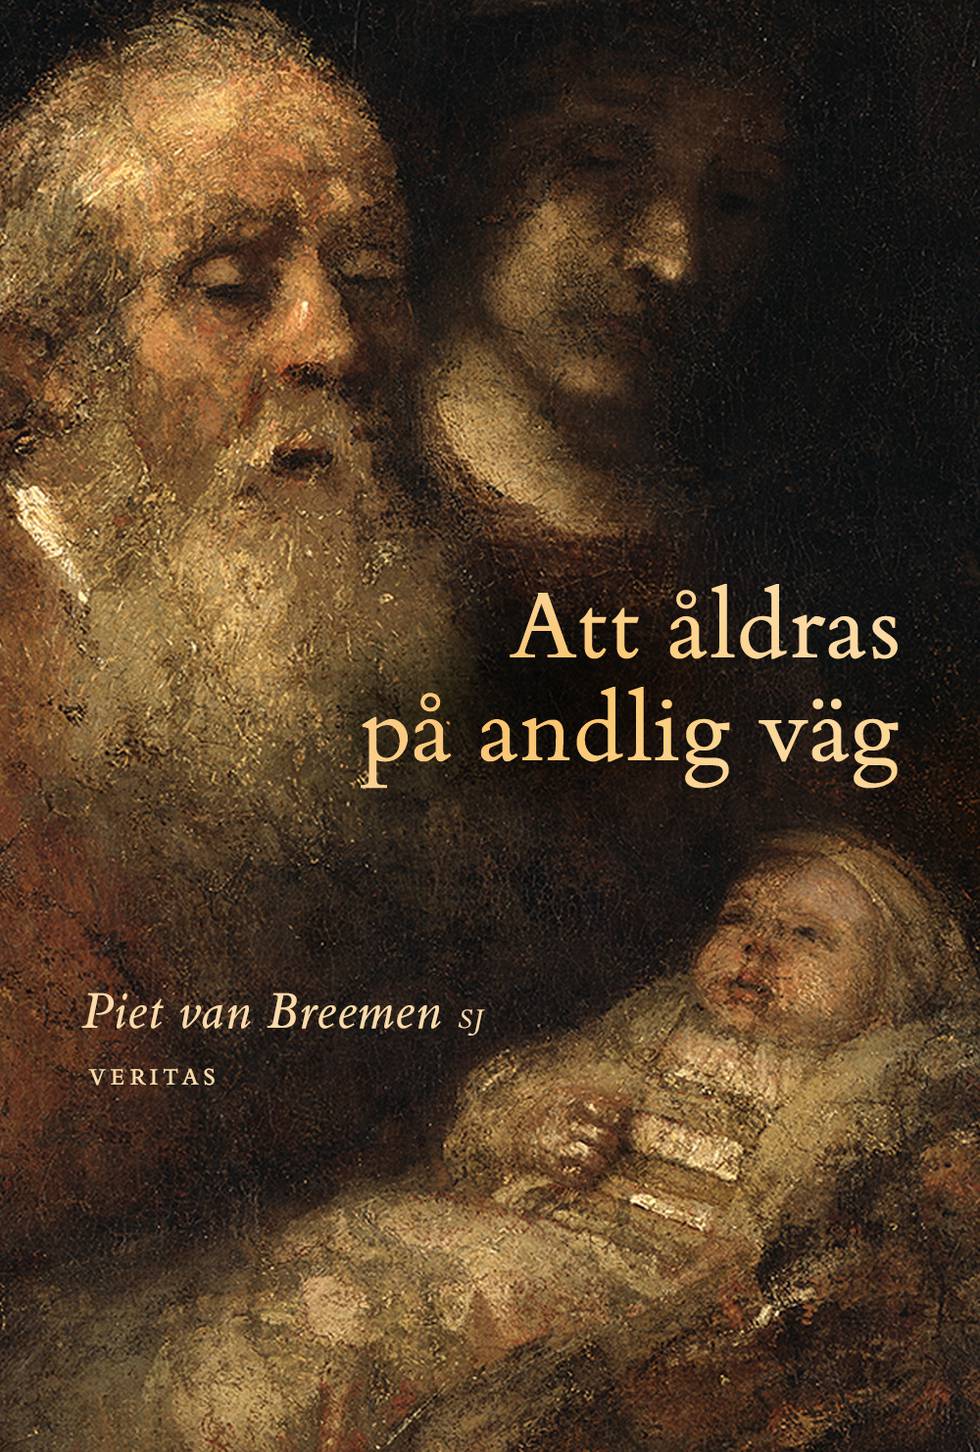 "Att åldrar på andlig väg" av Piet van Breemen SJ.